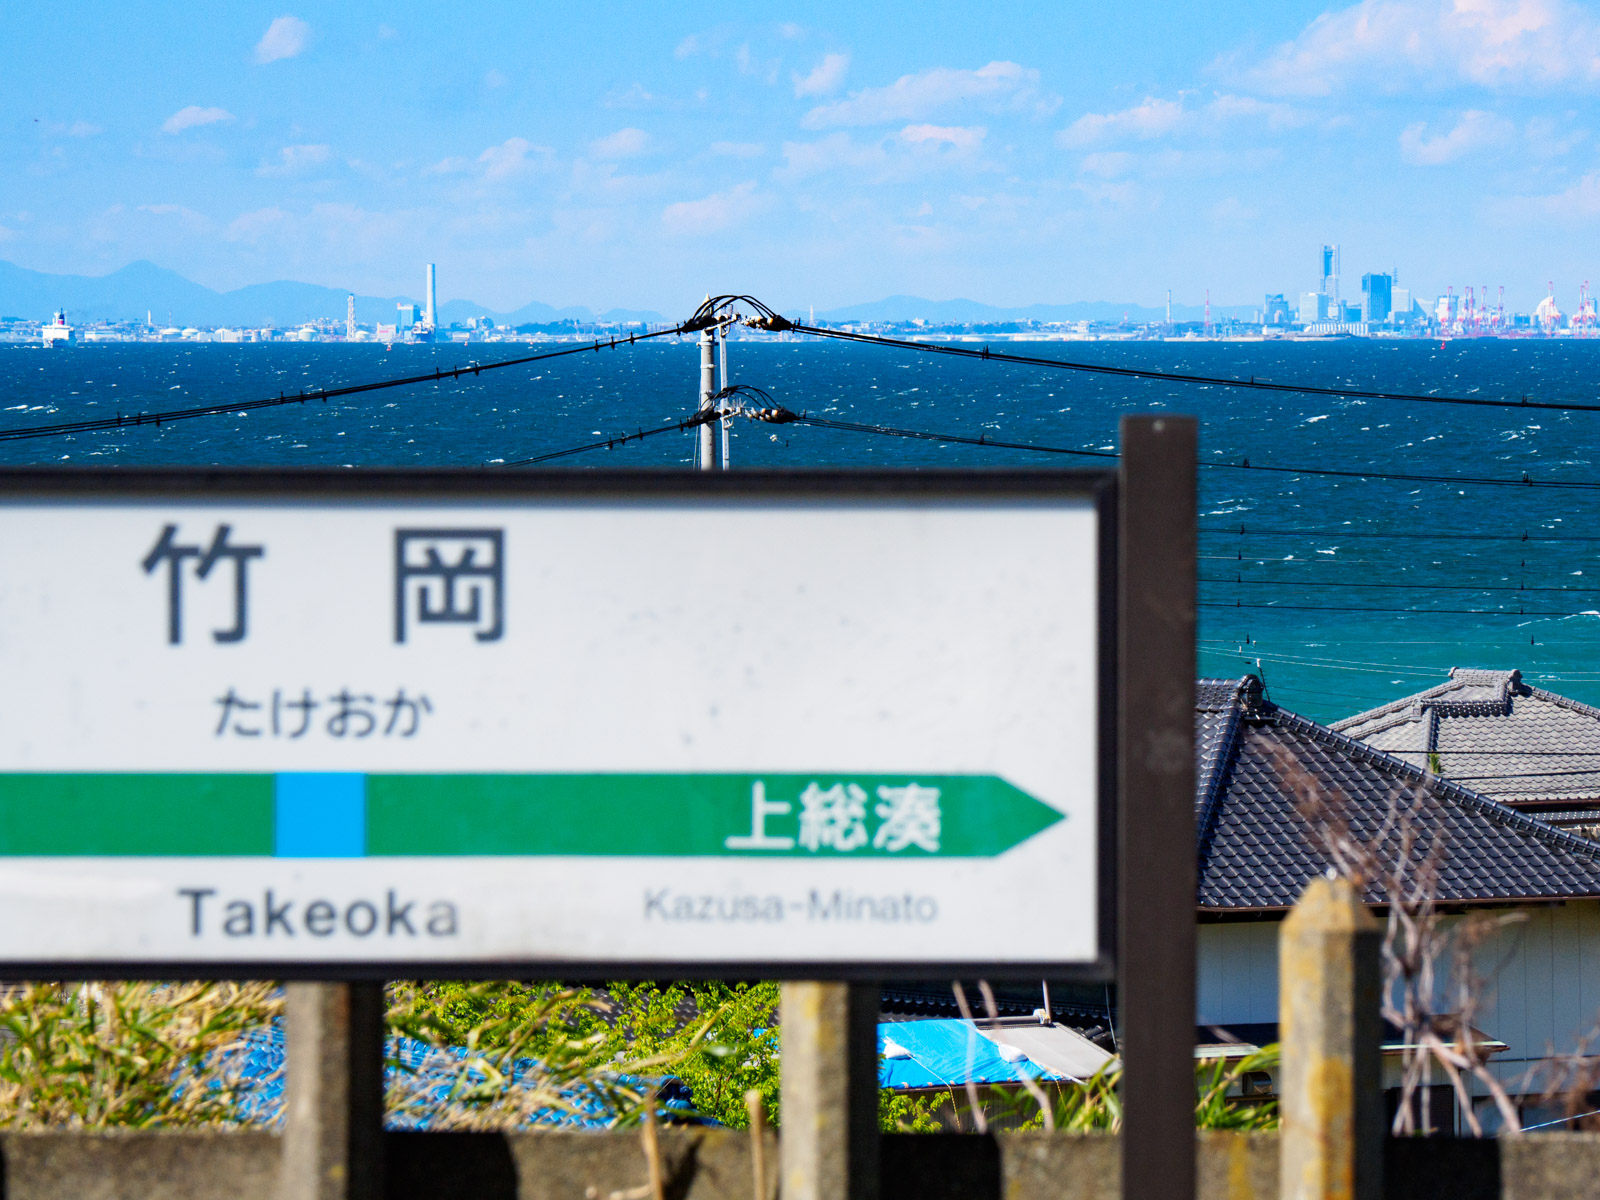 竹岡駅のホームから見た、東京湾越しの横浜・みなとみらいのビル群